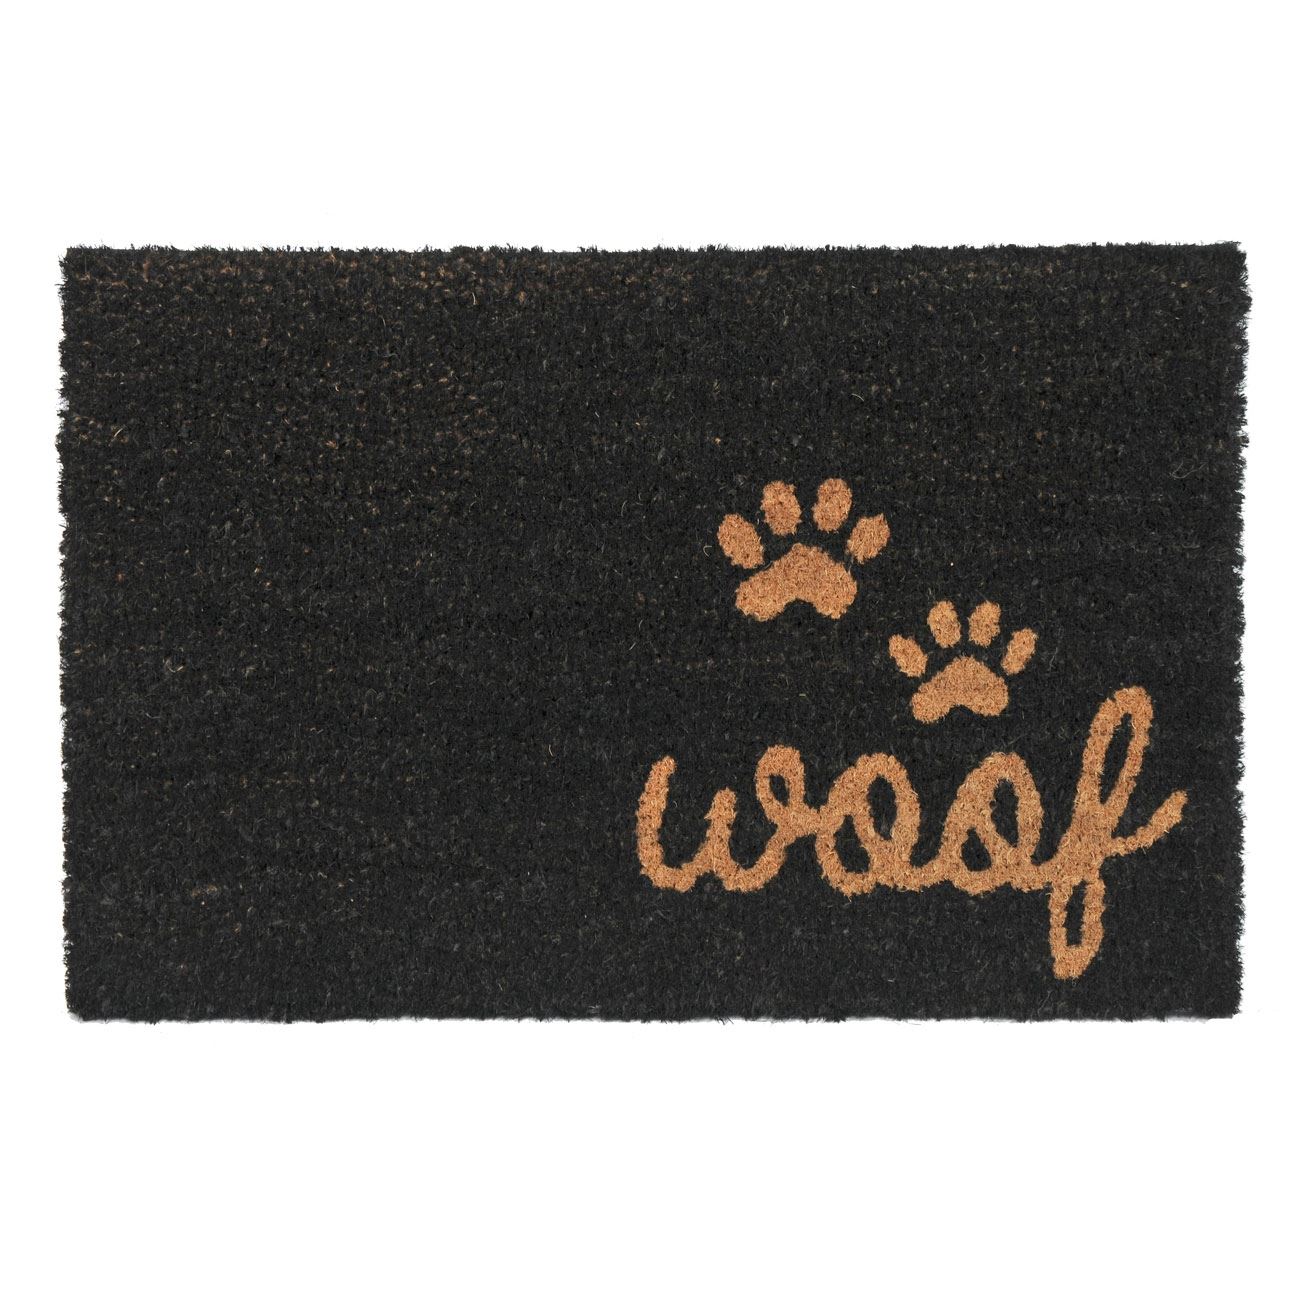 Lábtörlő  fekete barna kutyatalp "Woof" 60x40 cm